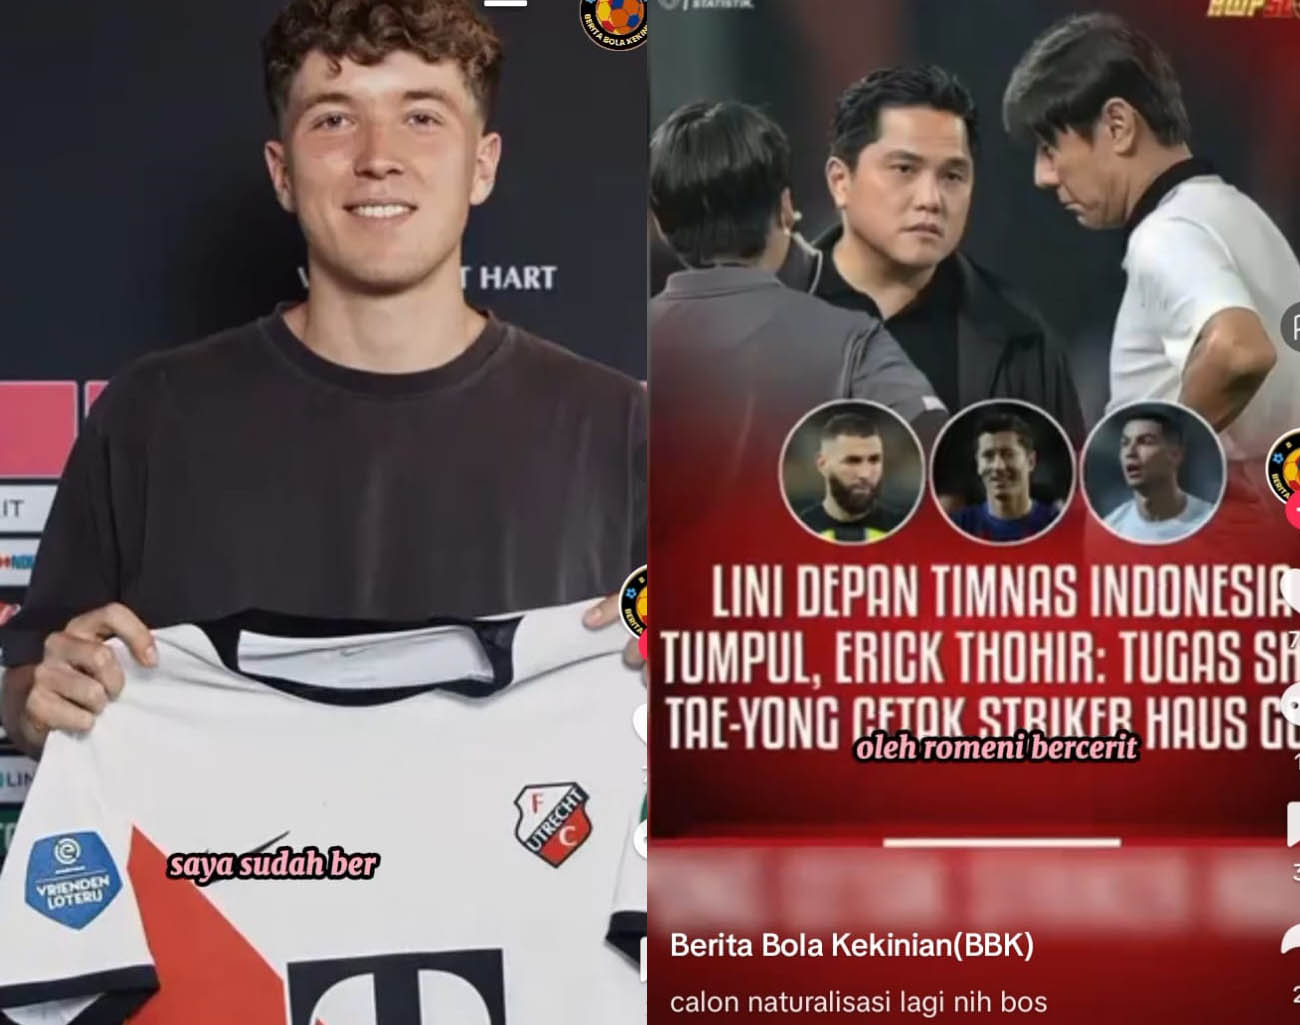 Indonesia Tambah Pemain Baru, Shin Tae Young Butuh Penyerang Haus Gol, Ronde 3 Kualifikasi Piala Dunia 2026